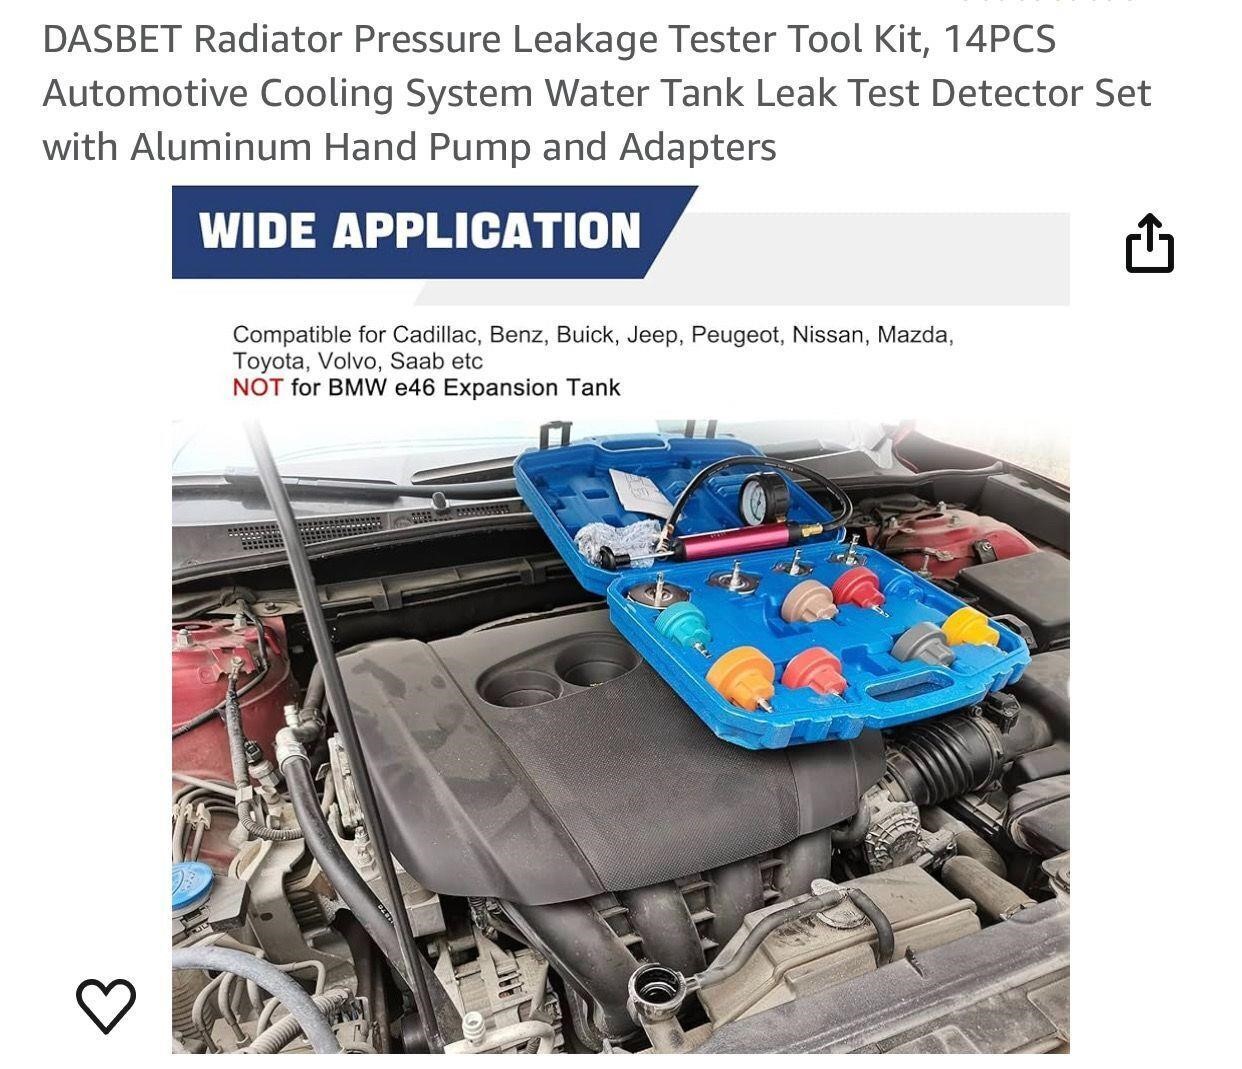 DASBET Radiator Pressure Leakage Tester Tool Kit